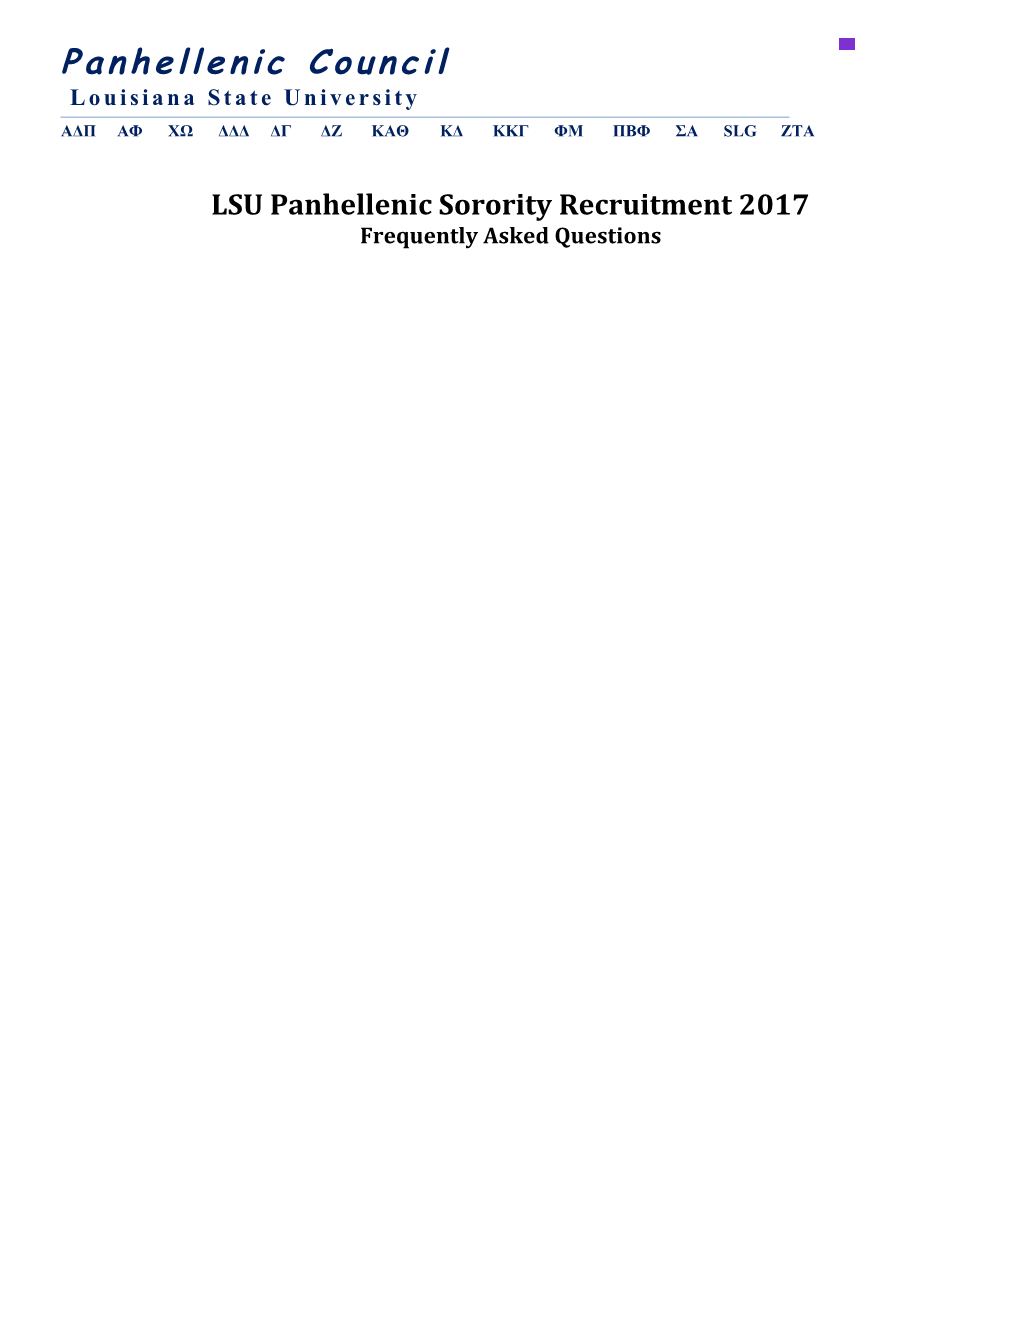 LSU Panhellenic Sorority Recruitment 2017